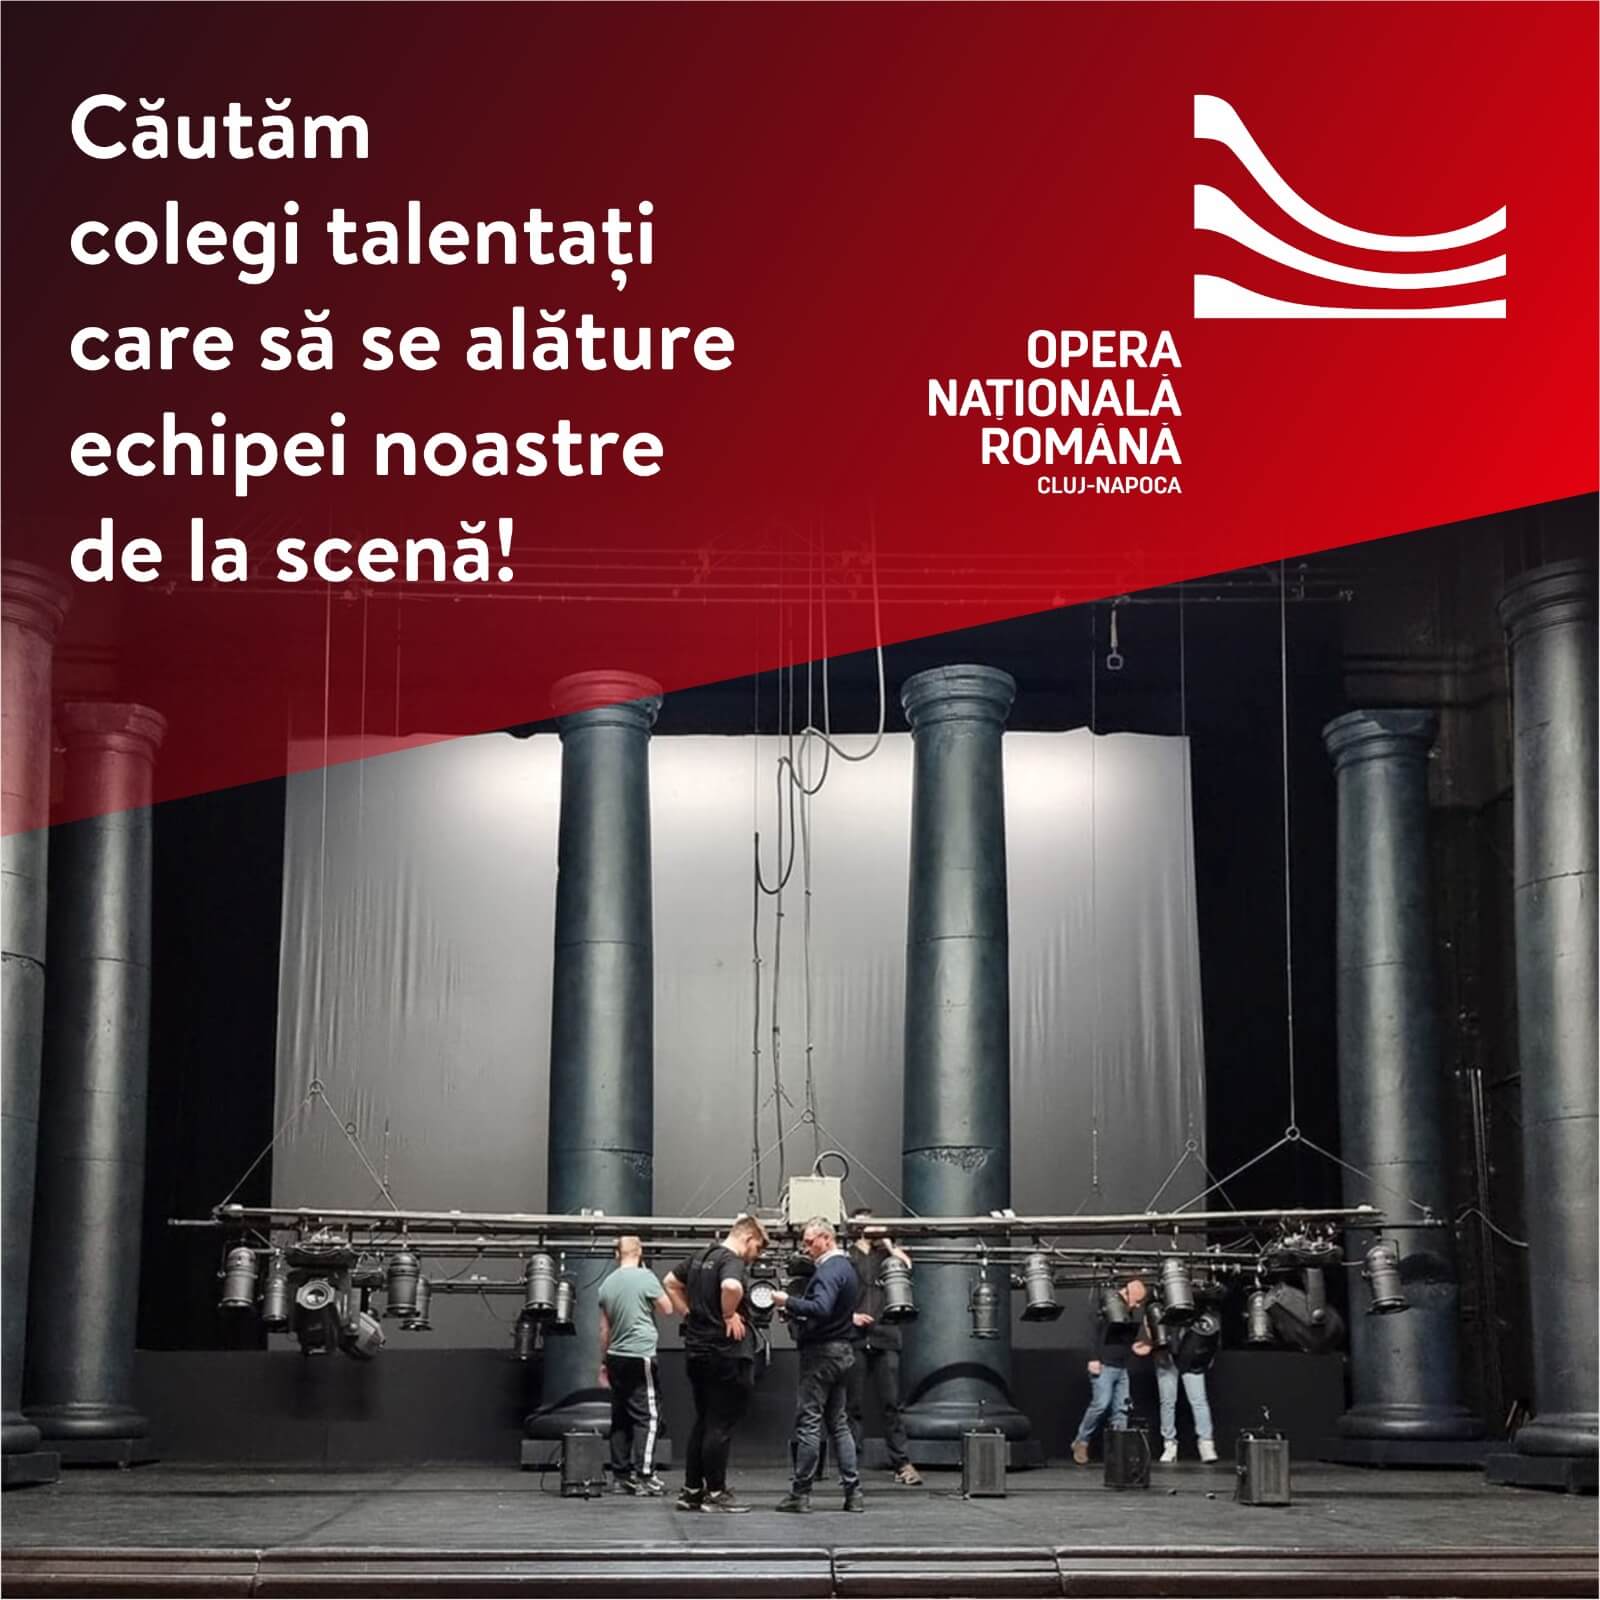 Vrei să iei parte la magia pe care o creăm la Opera Națională Română din Cluj-Napoca?